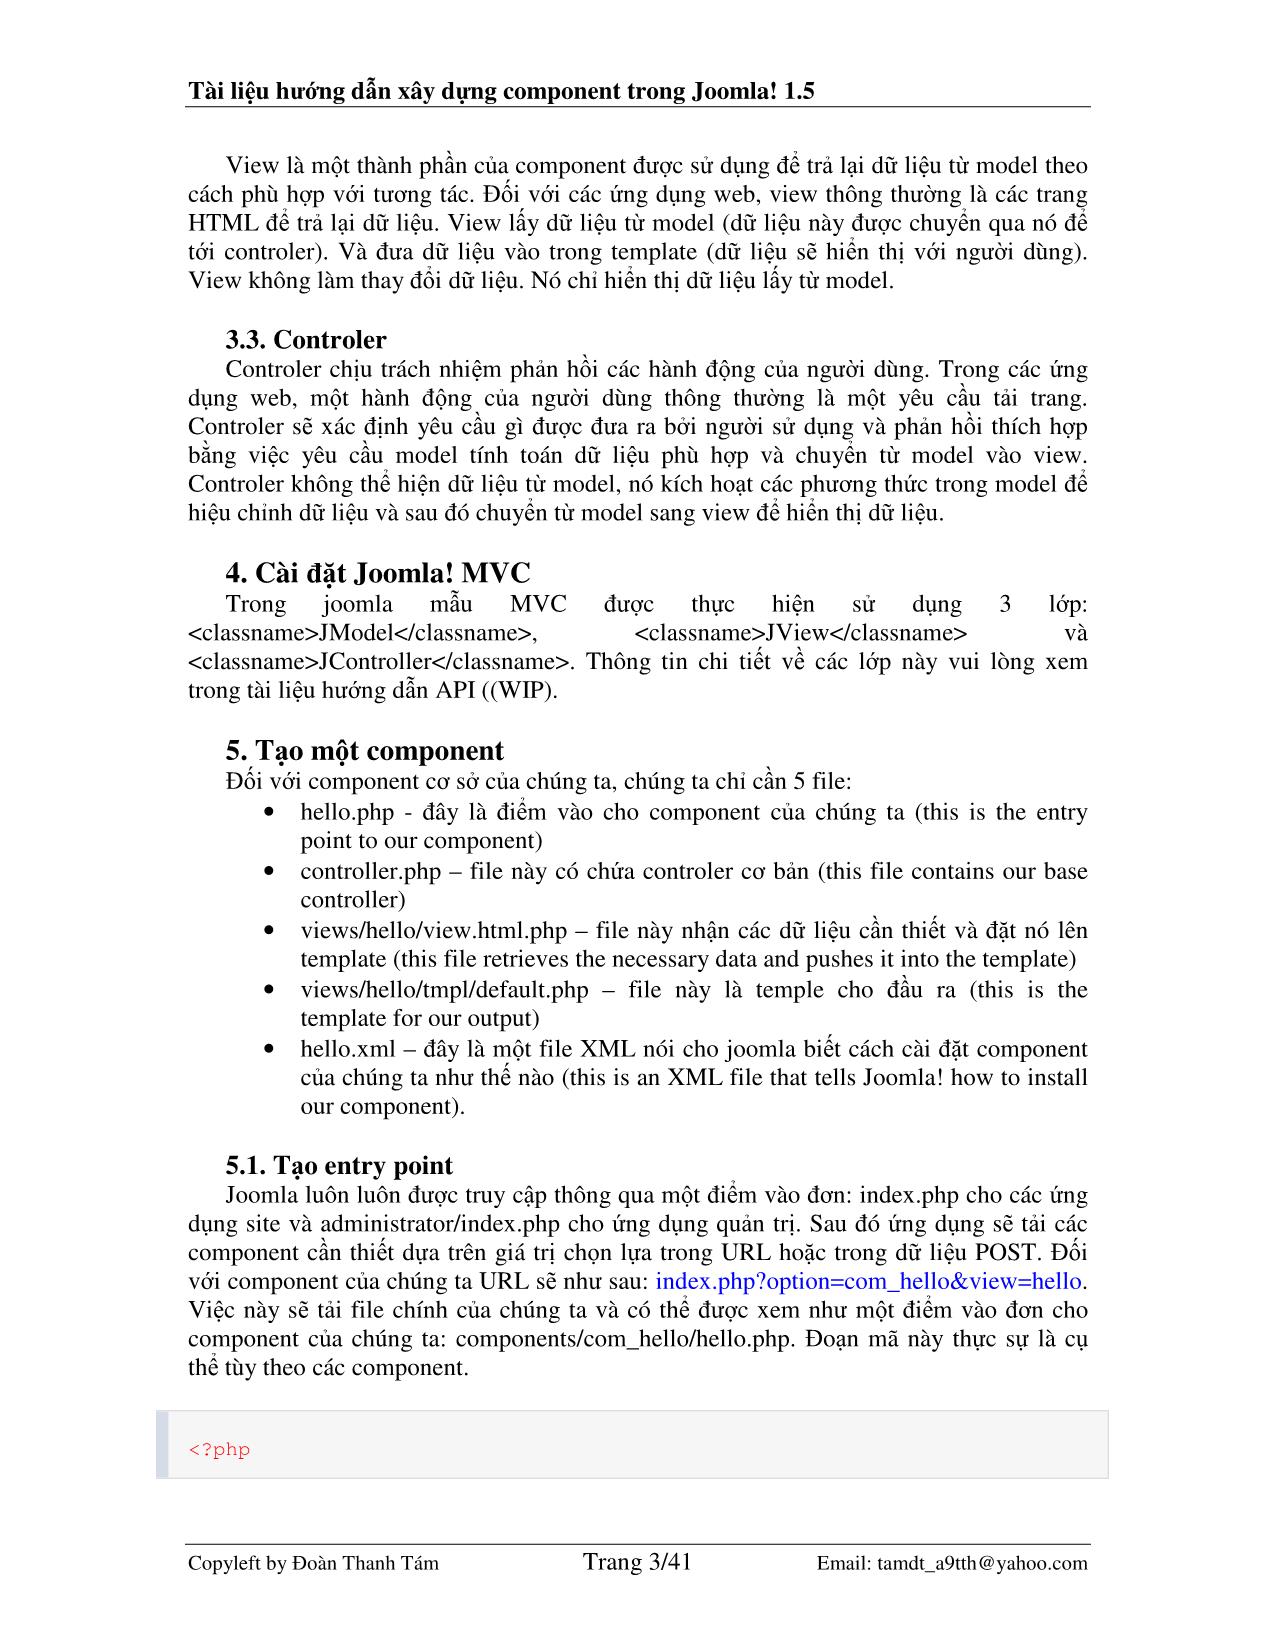 Tài liệu hướng dẫn xây dựng component trong Joomla! 1.5 trang 3